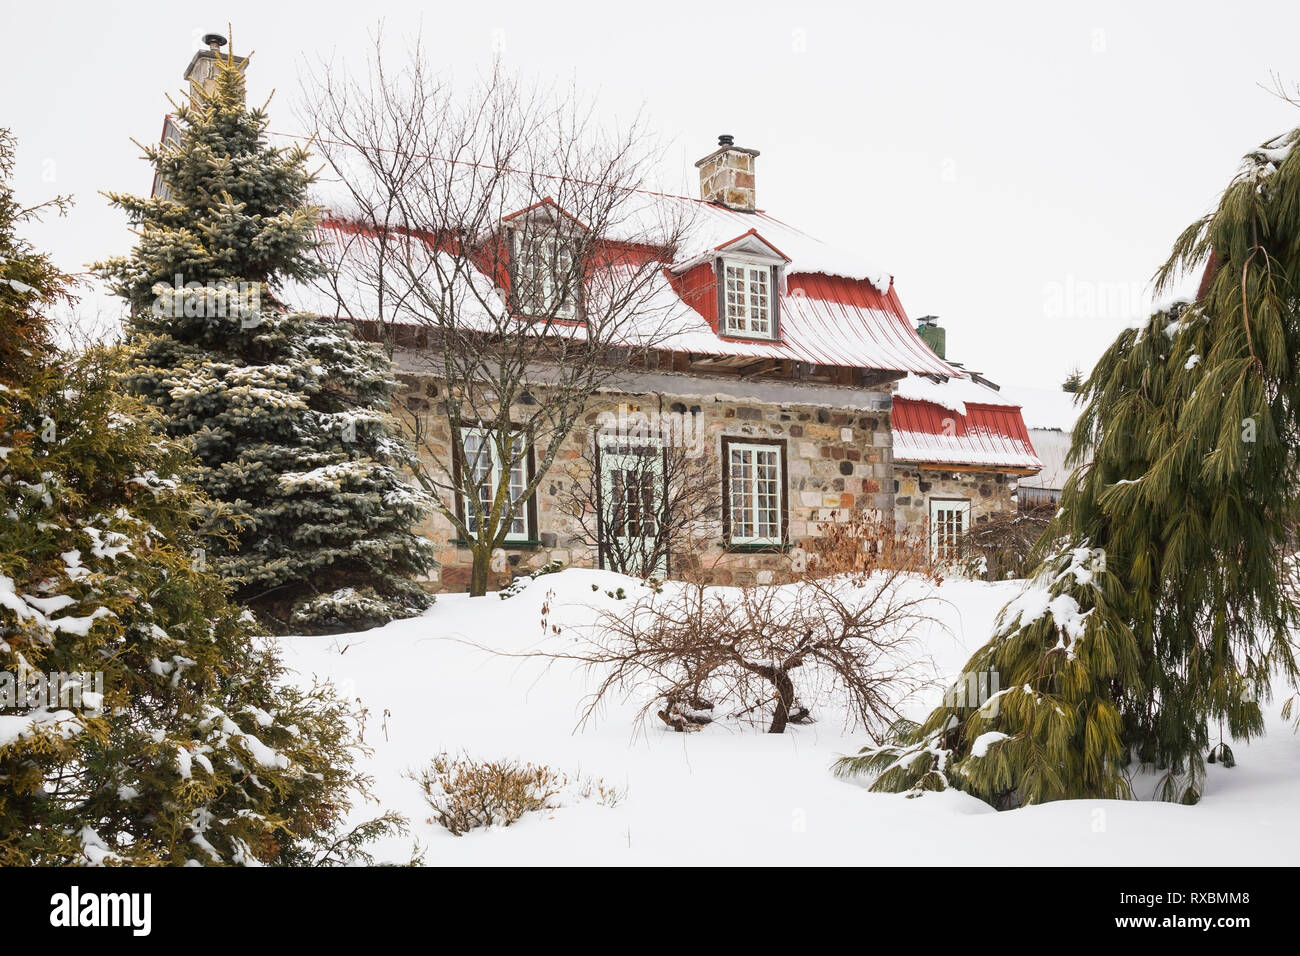 Old 1838 Canadiana casa de estilo cabaña de piedra de campo de colores variados con techo de chapa roja enmarcada por árboles perennes en invierno, Quebec, Canadá. Esta imagen es propiedad liberada. CUPR0204 Foto de stock